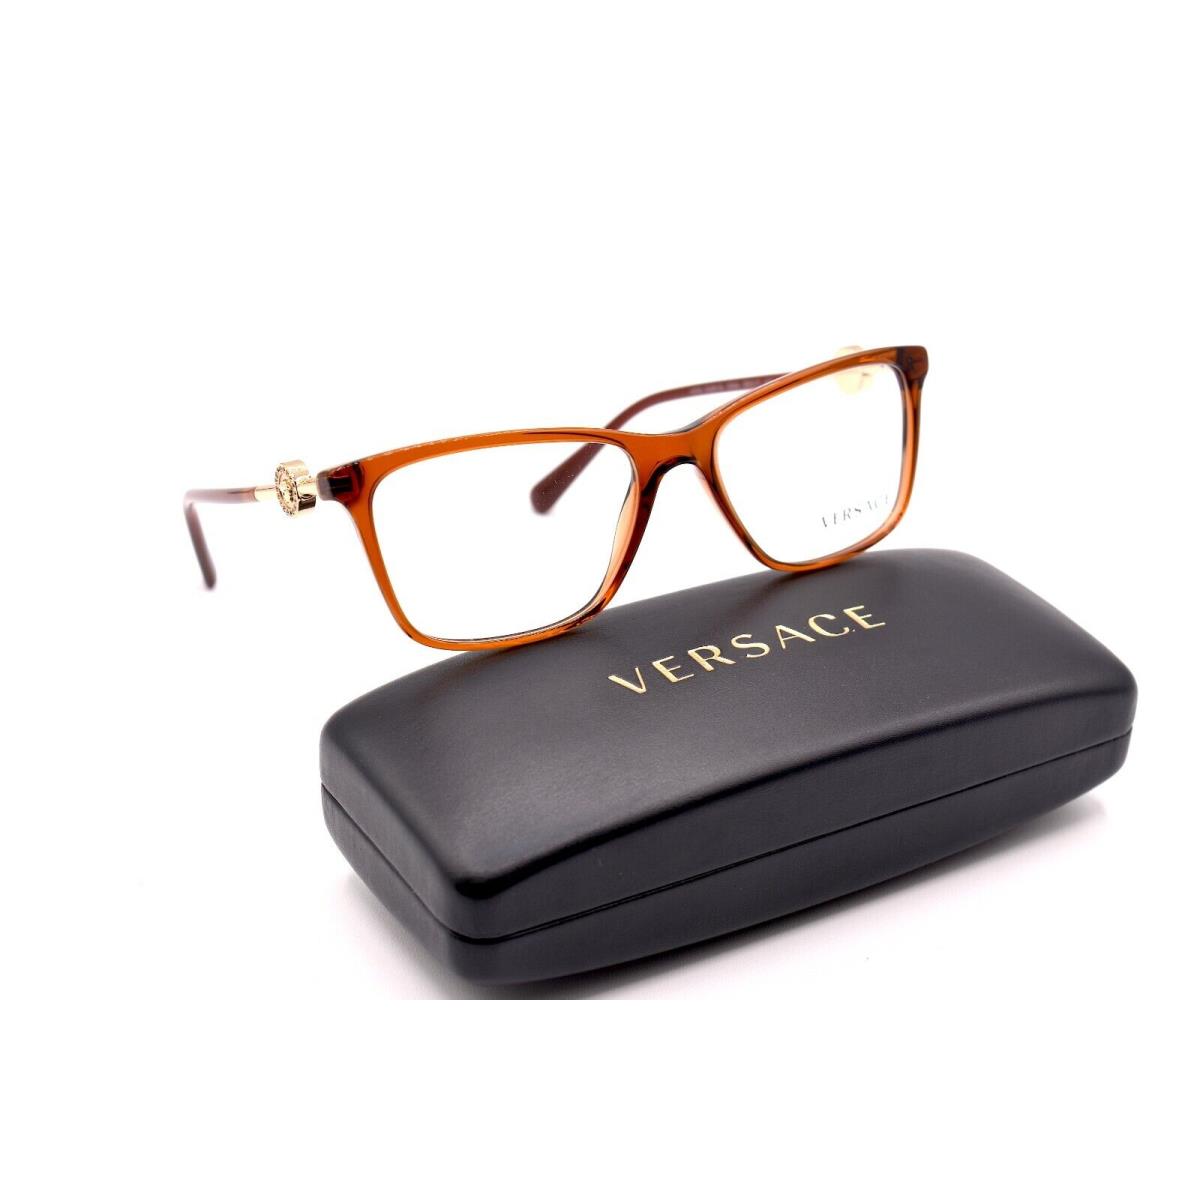 Versace VE3299B 5324 Transparent Brown Eyeglasses Frame RX 55-17